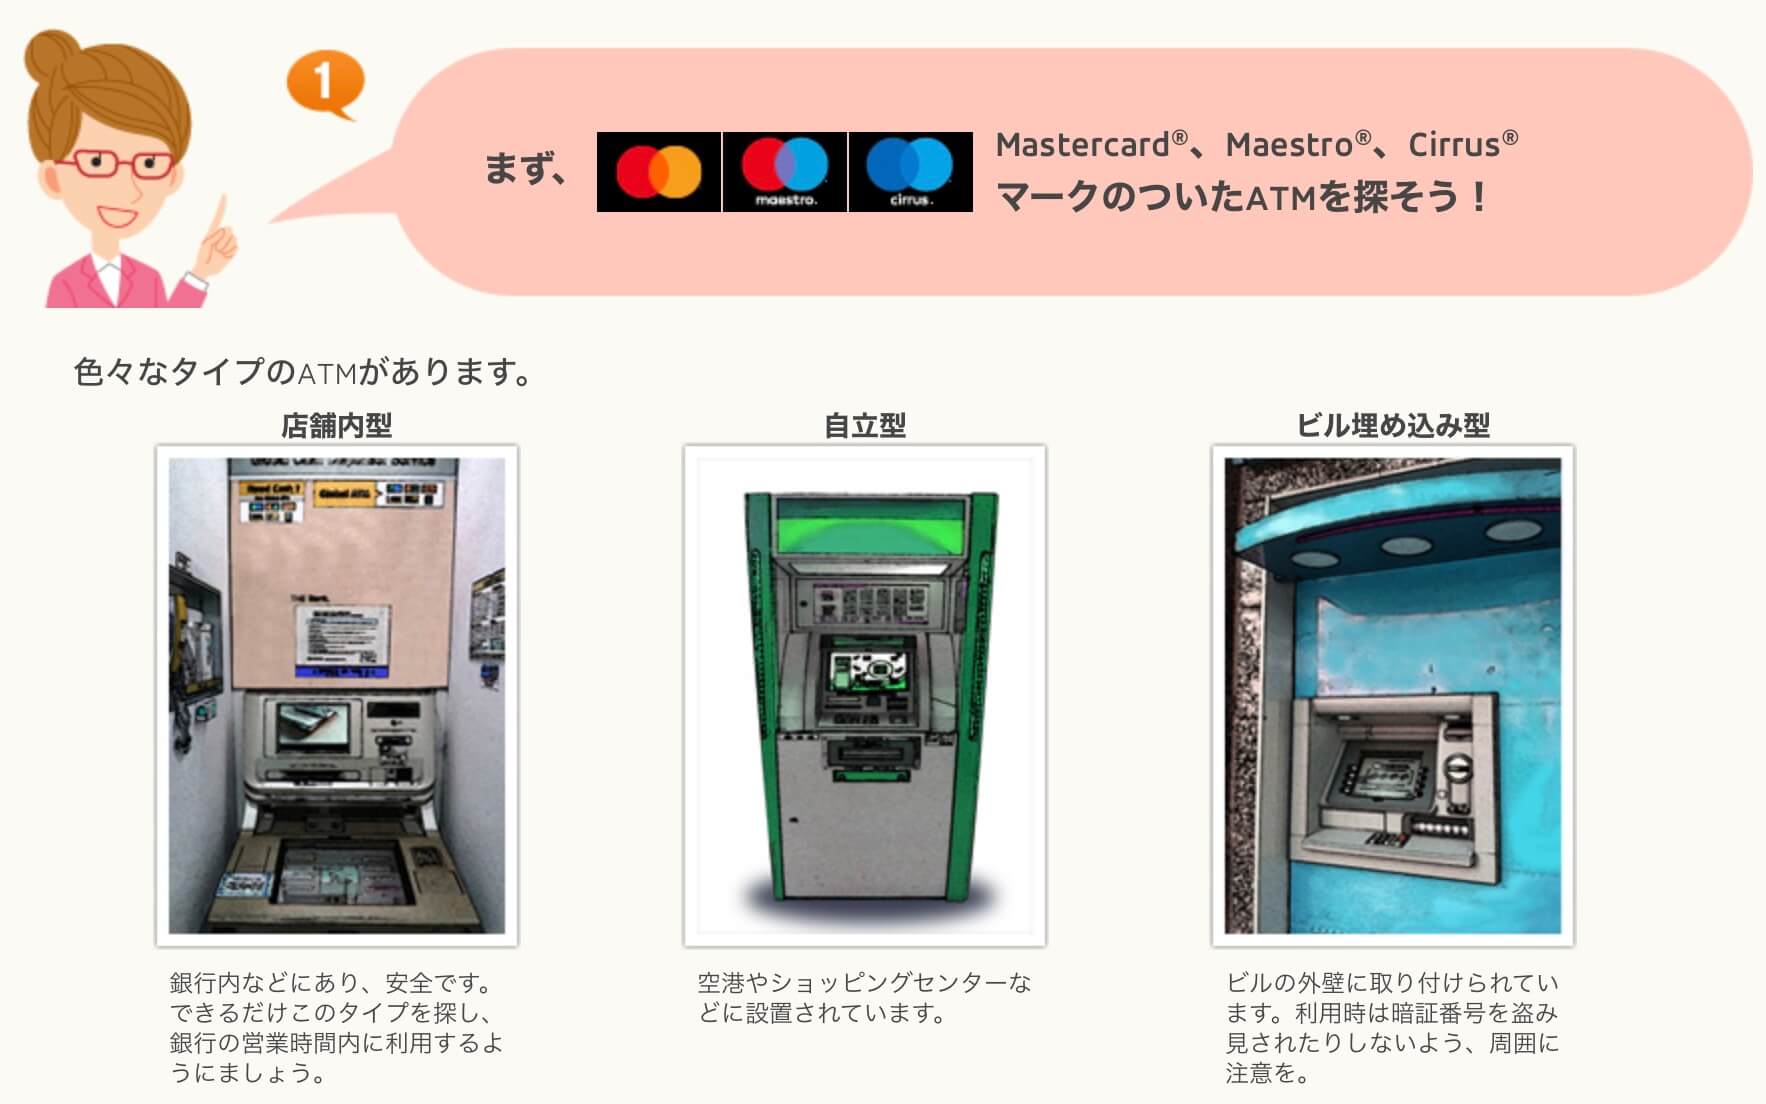 MasterCard加盟店ATMの使い方